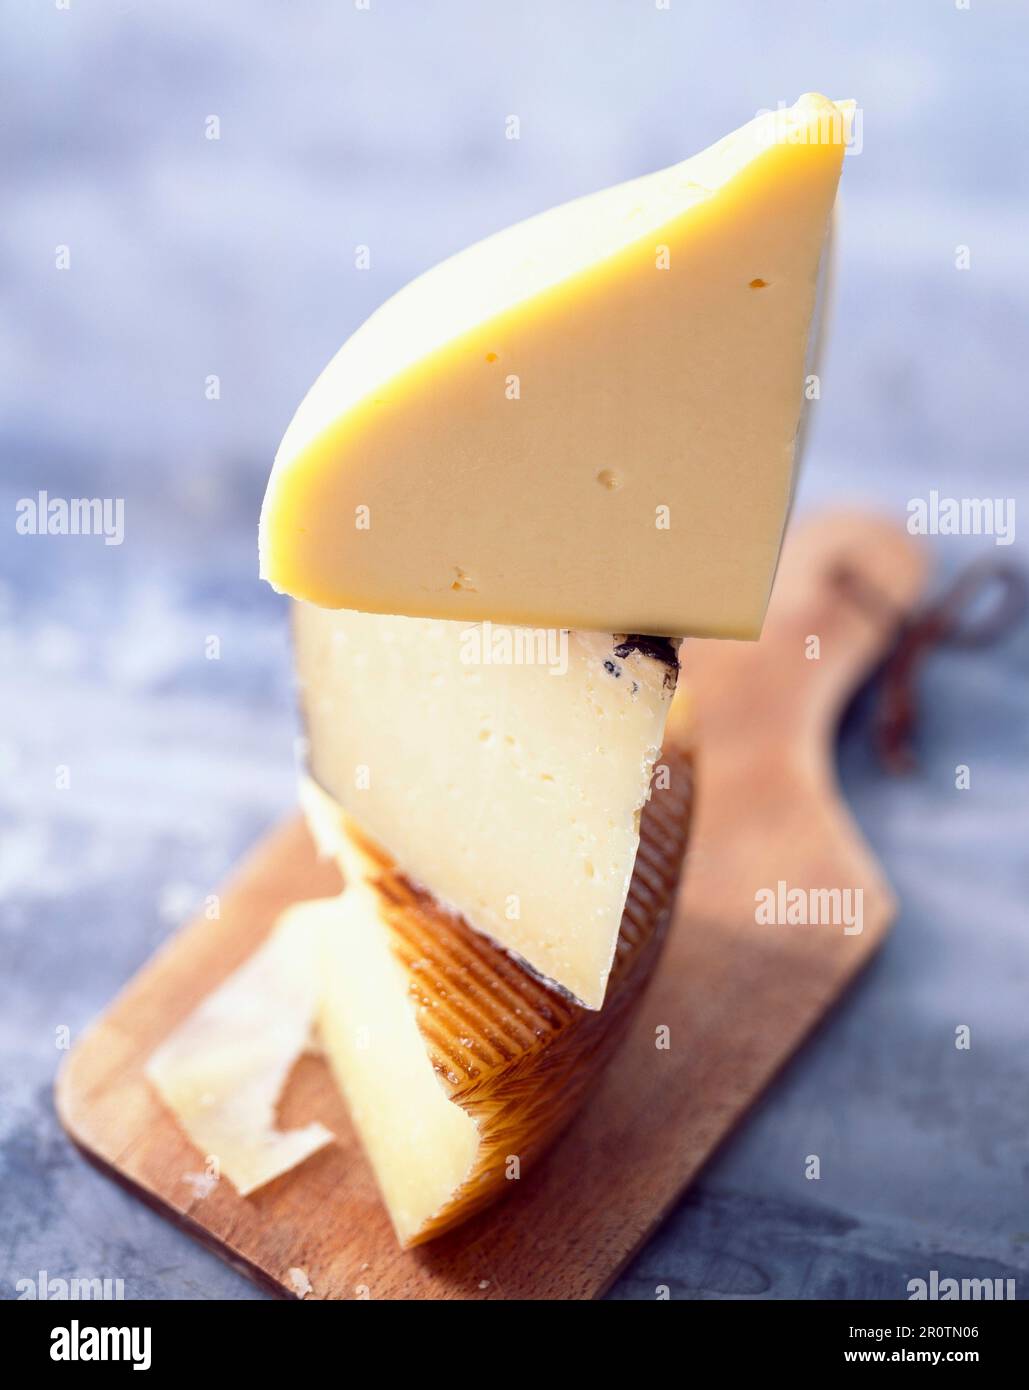 Spanish cheeses Stock Photo